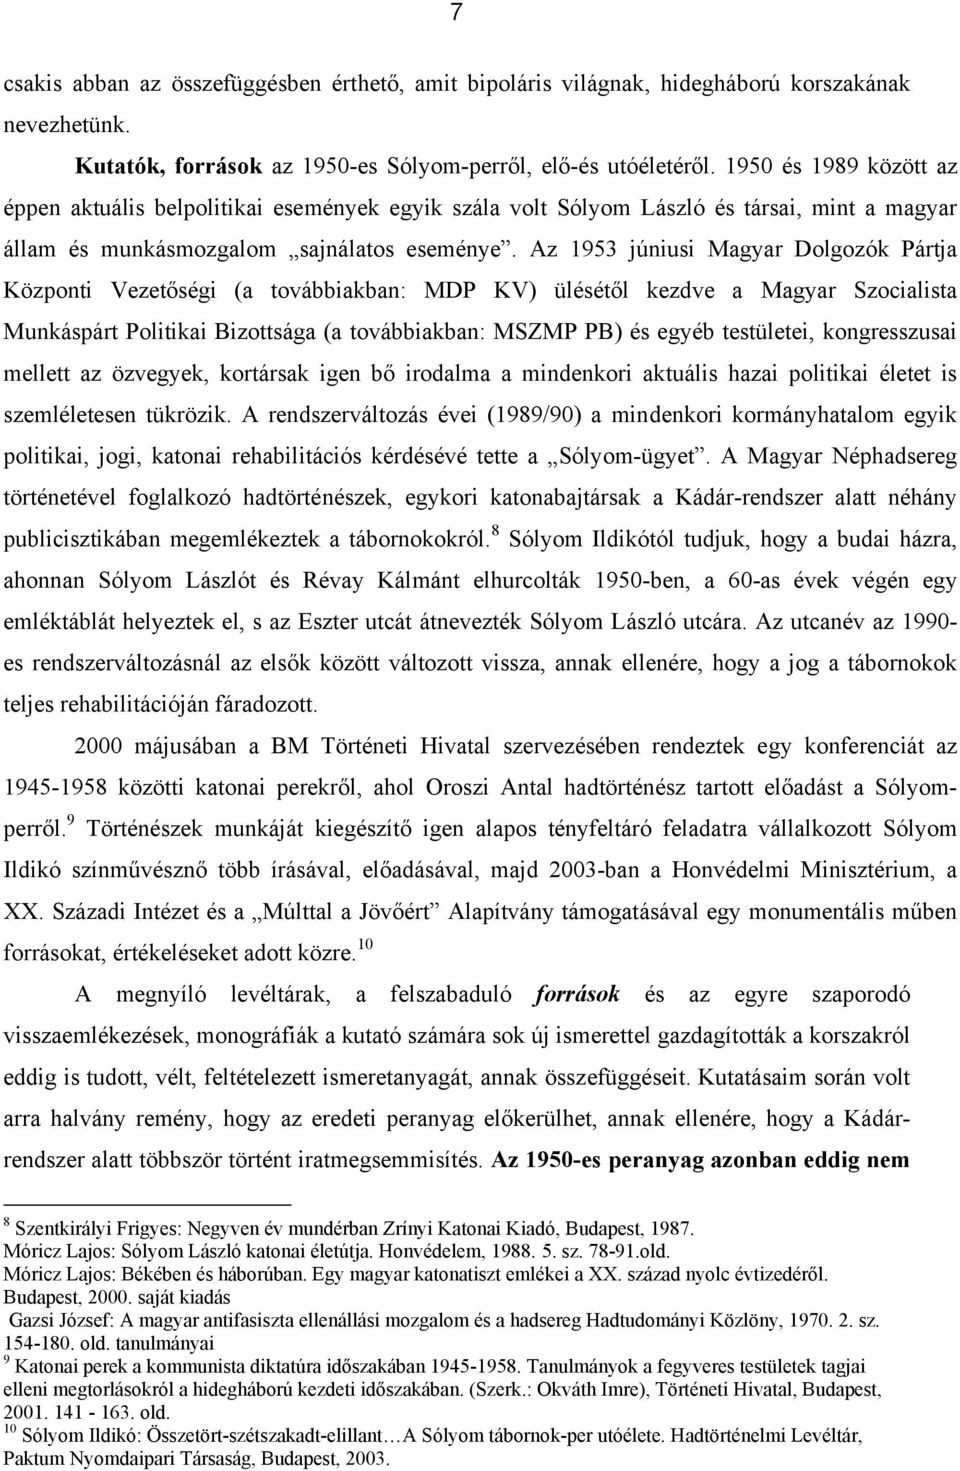 Az 1953 júniusi Magyar Dolgozók Pártja Központi Vezetőségi (a továbbiakban: MDP KV) ülésétől kezdve a Magyar Szocialista Munkáspárt Politikai Bizottsága (a továbbiakban: MSZMP PB) és egyéb